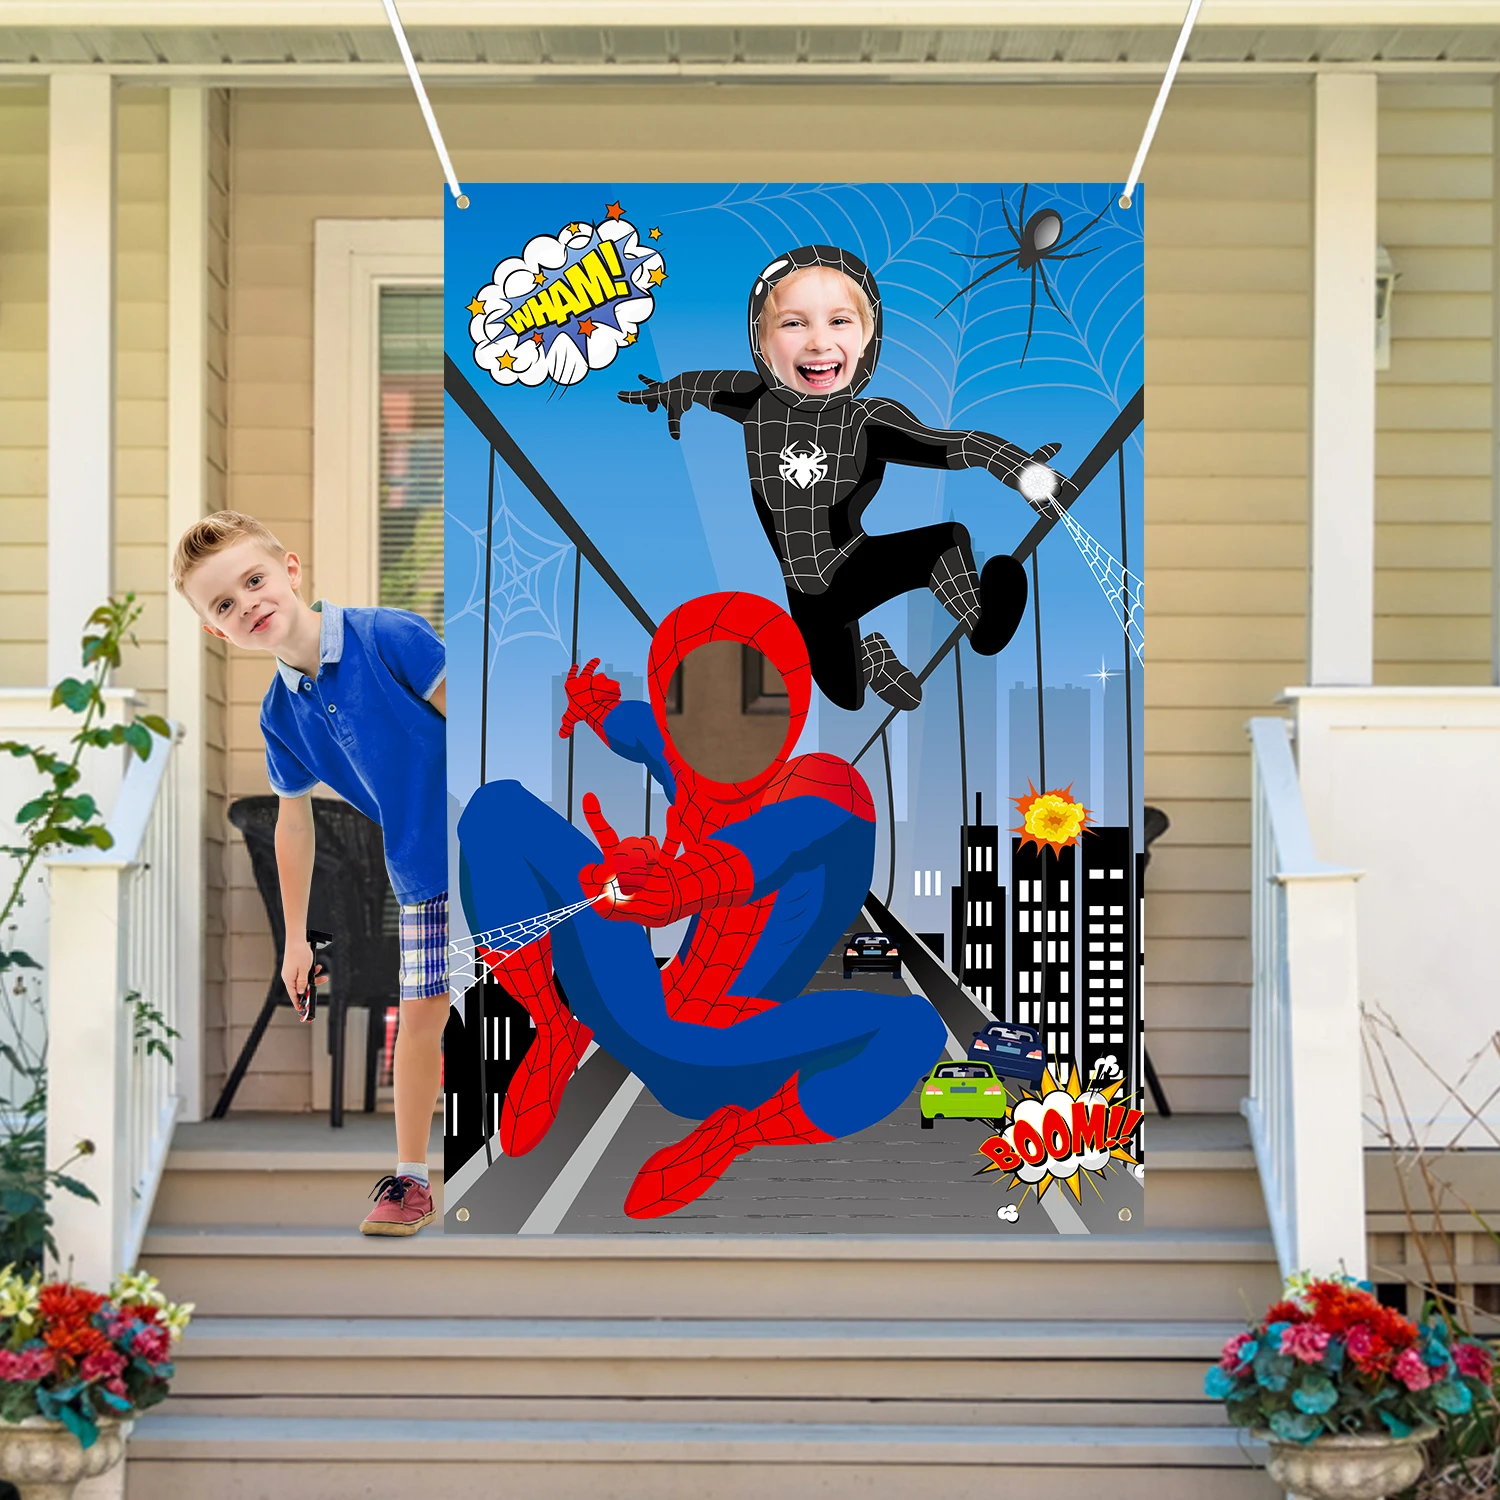 Nuevo  Fondo de tela grande para fotografía de Hombre Araña, cartel de puerta con cara de superhéroe, suministros para fiestas temáticas para bKids gBQLxqwEzlA